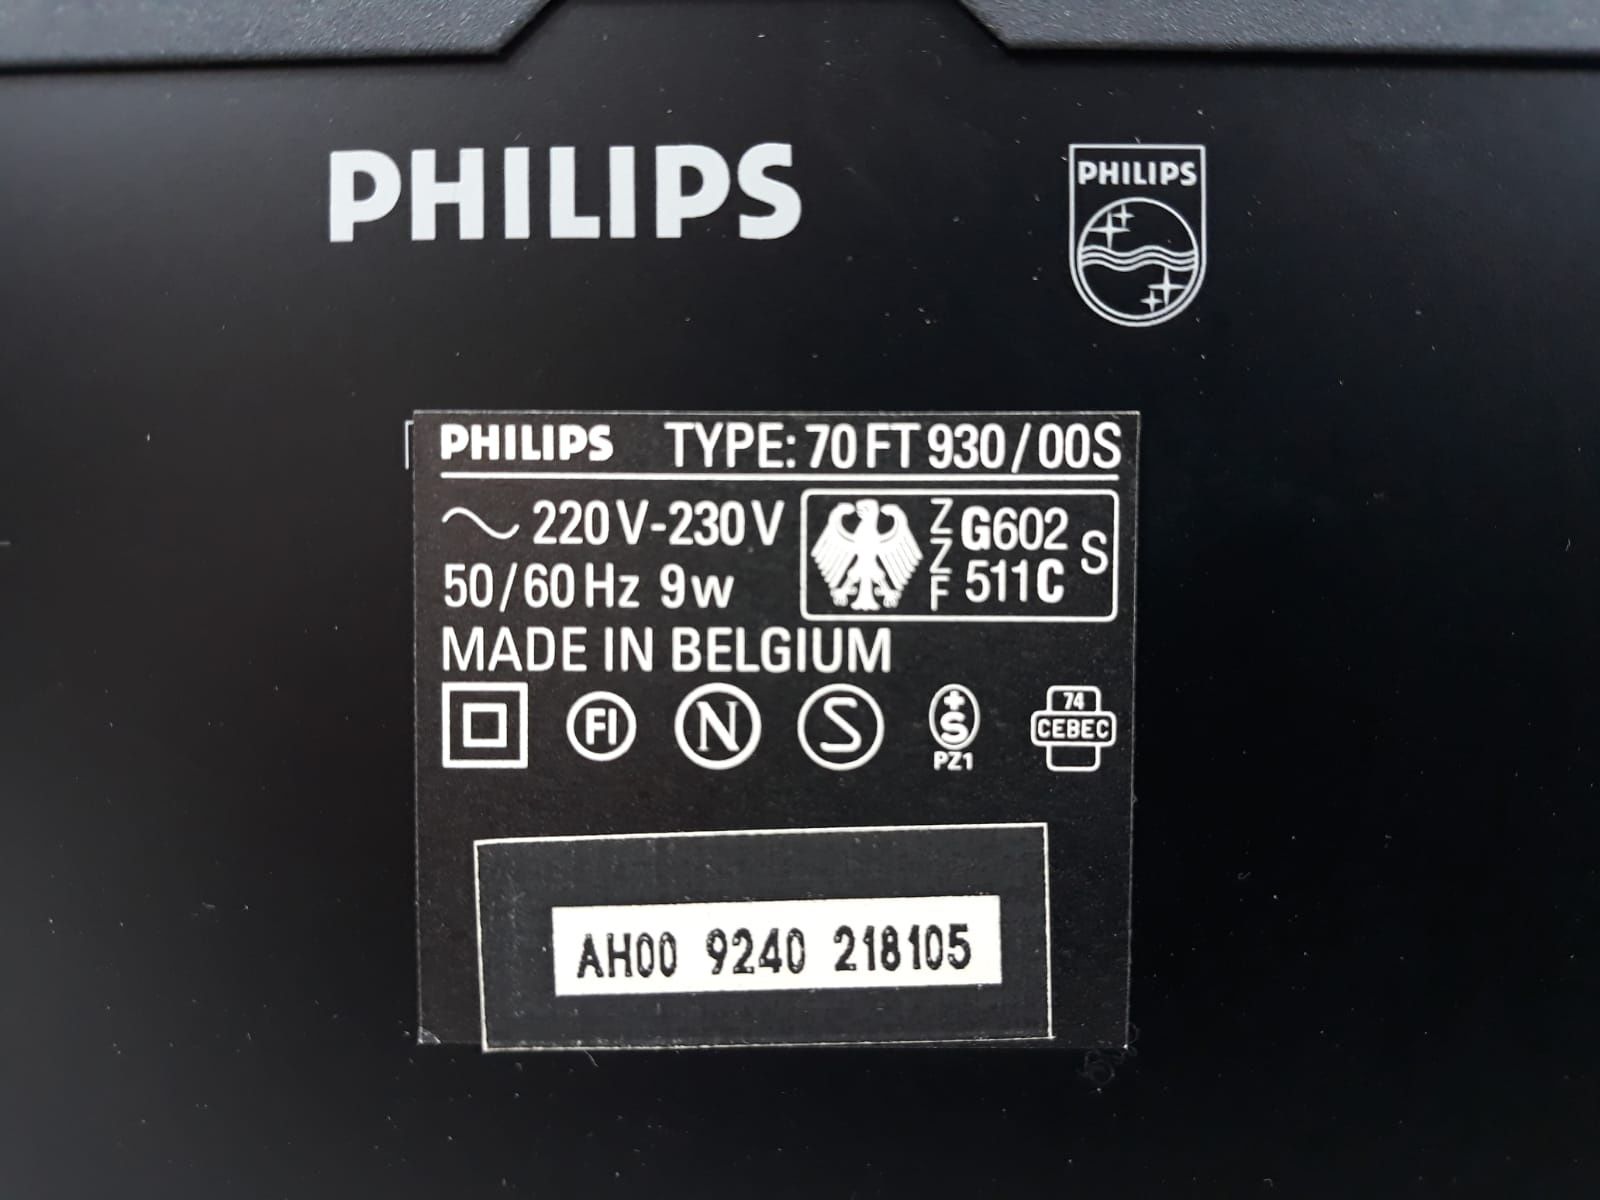 Tuner Philips FT 930 RADIO Szara seria lata 90 jakość